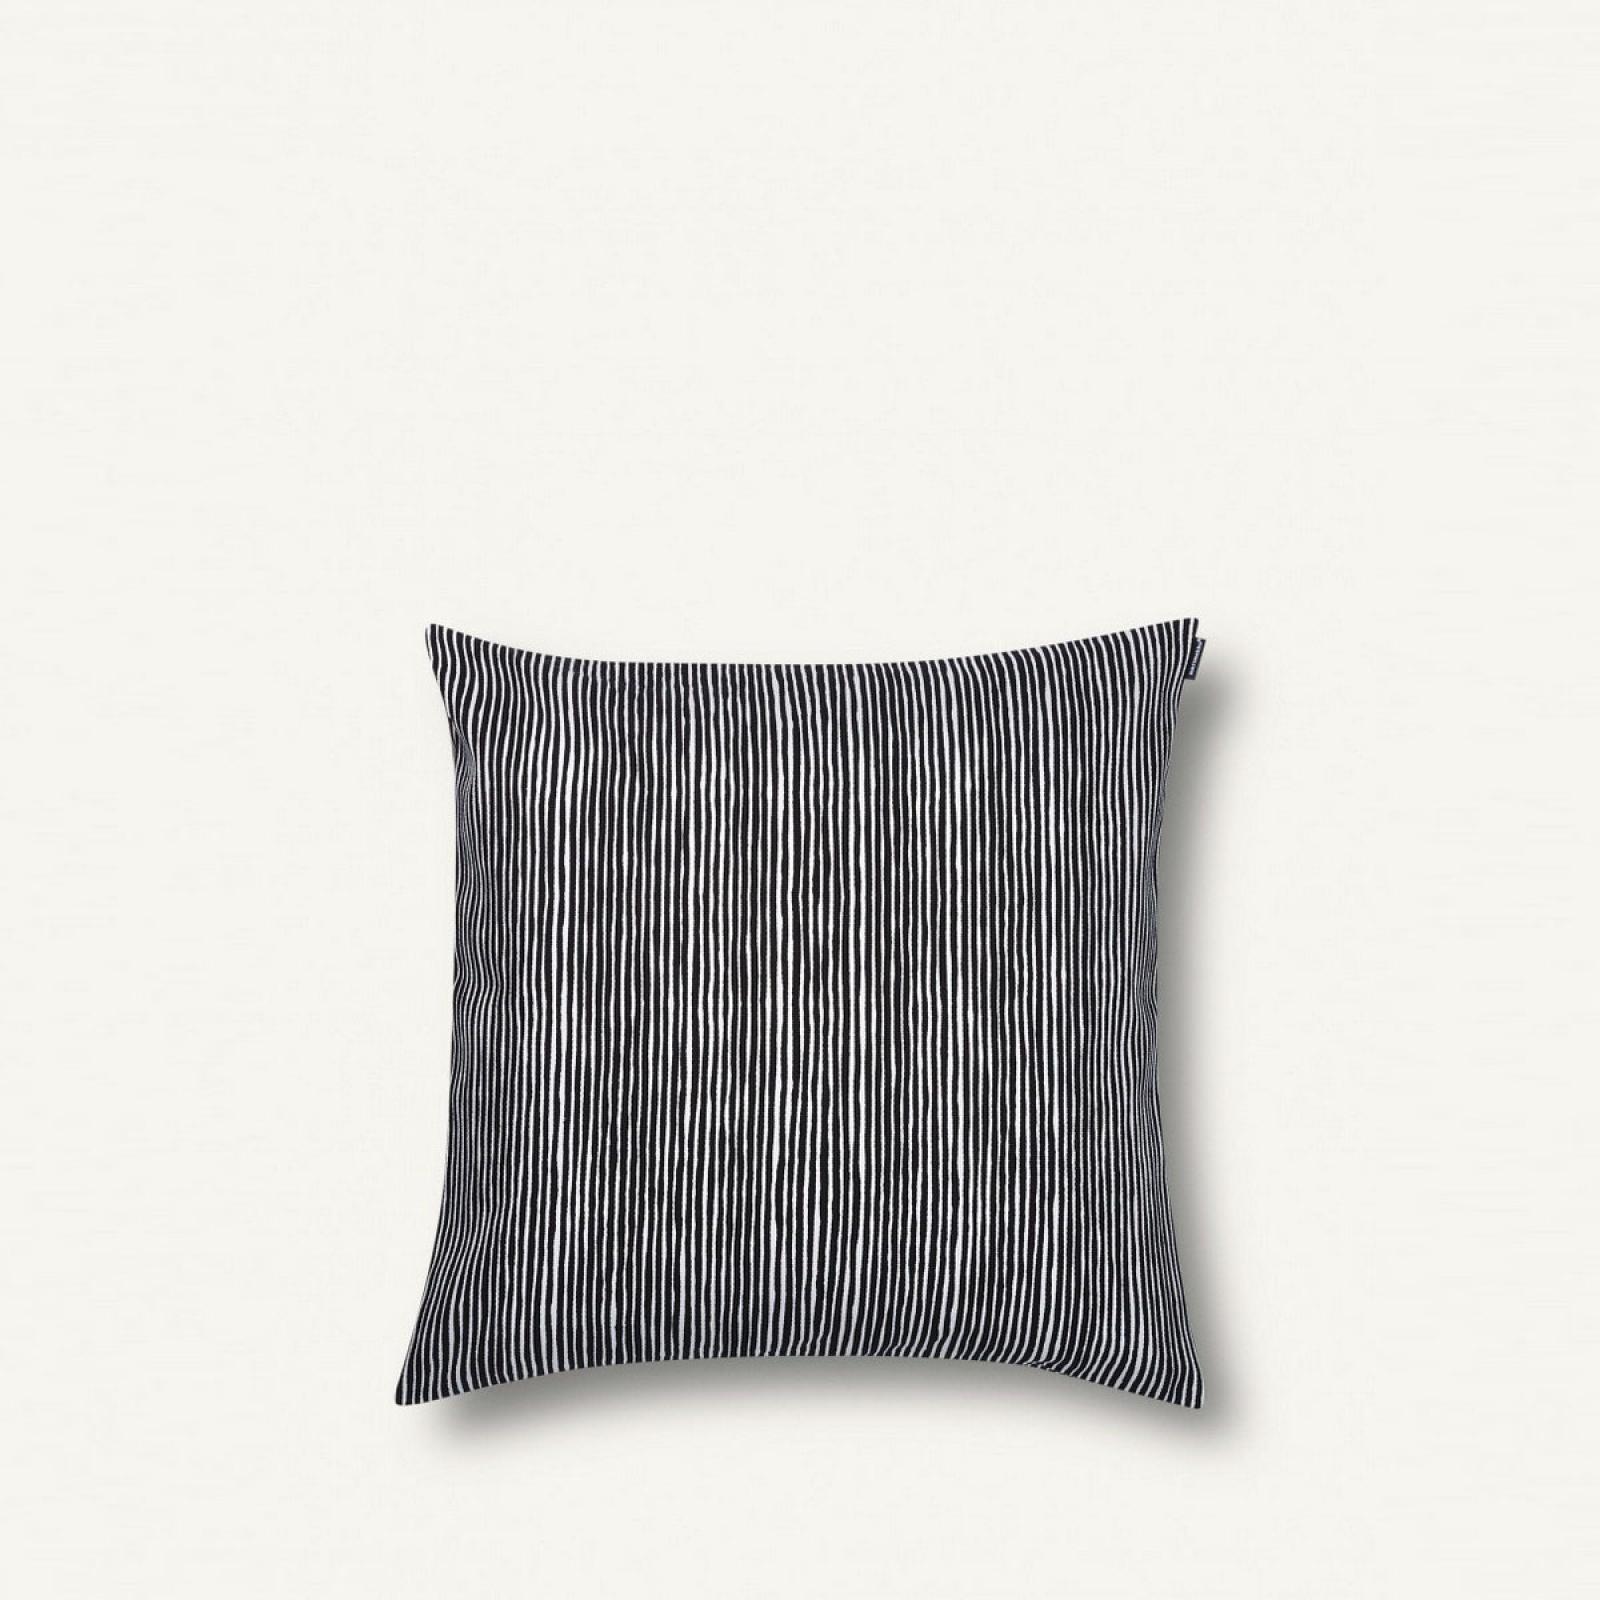 Varvunraita Cushion Cover 50x50 cm-WHITE/BLACK-UN